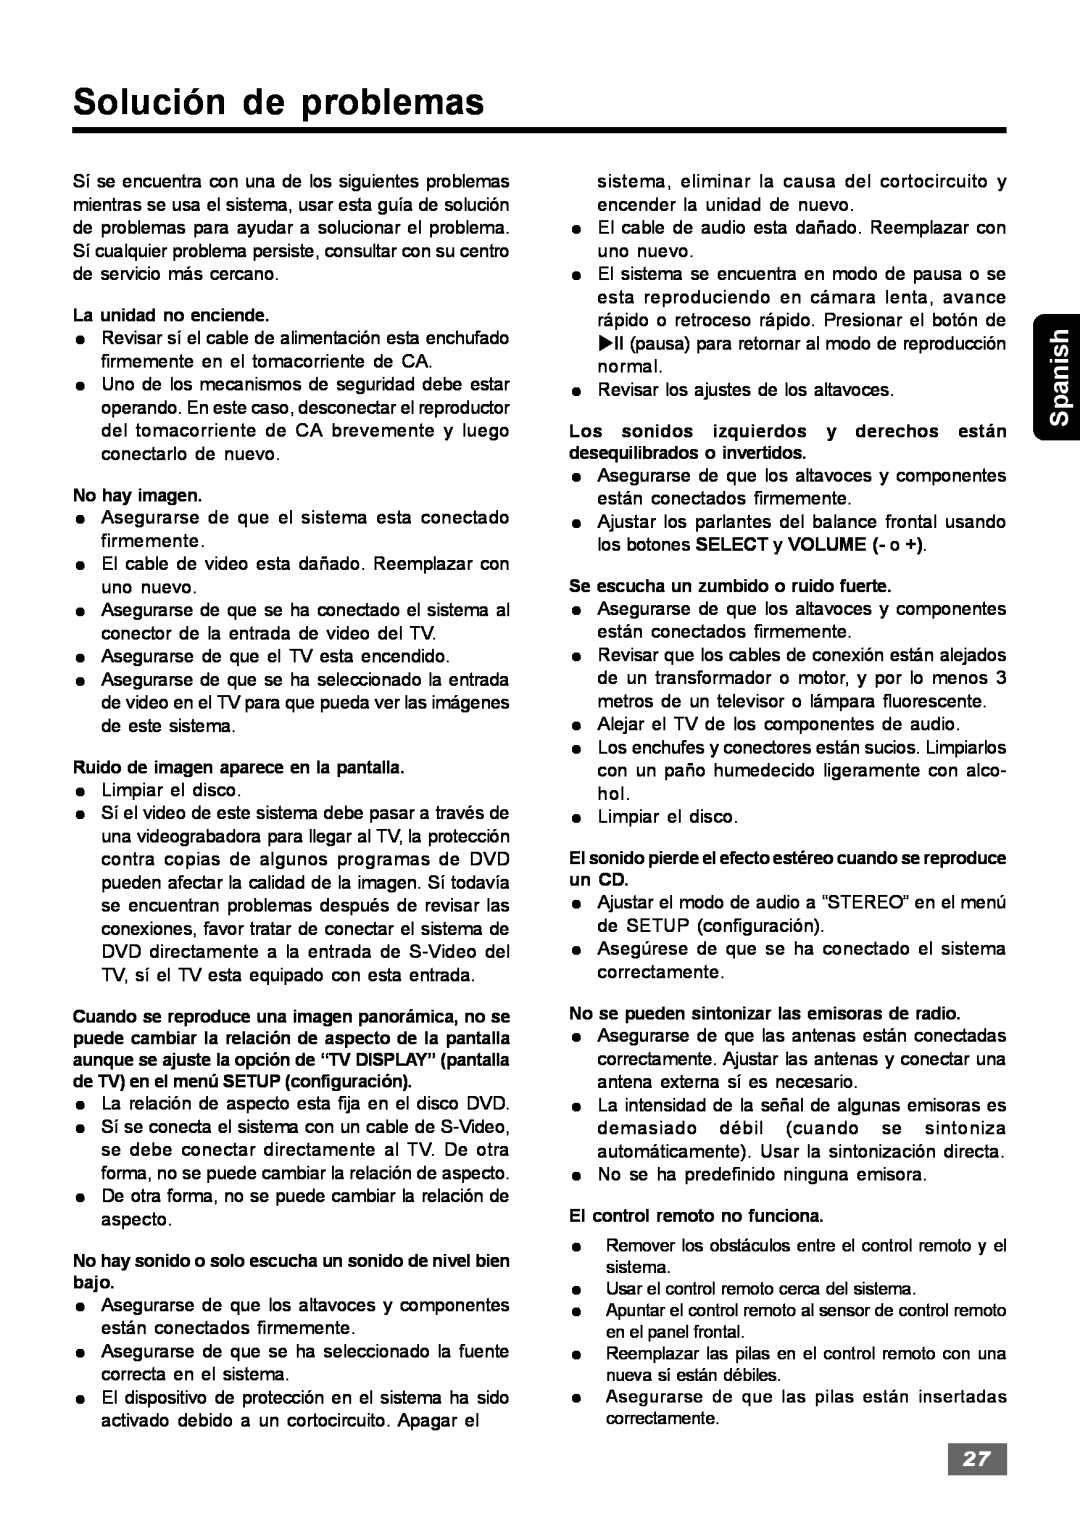 Insignia IS-HTIB102731 owner manual Solución de problemas, Spanish 